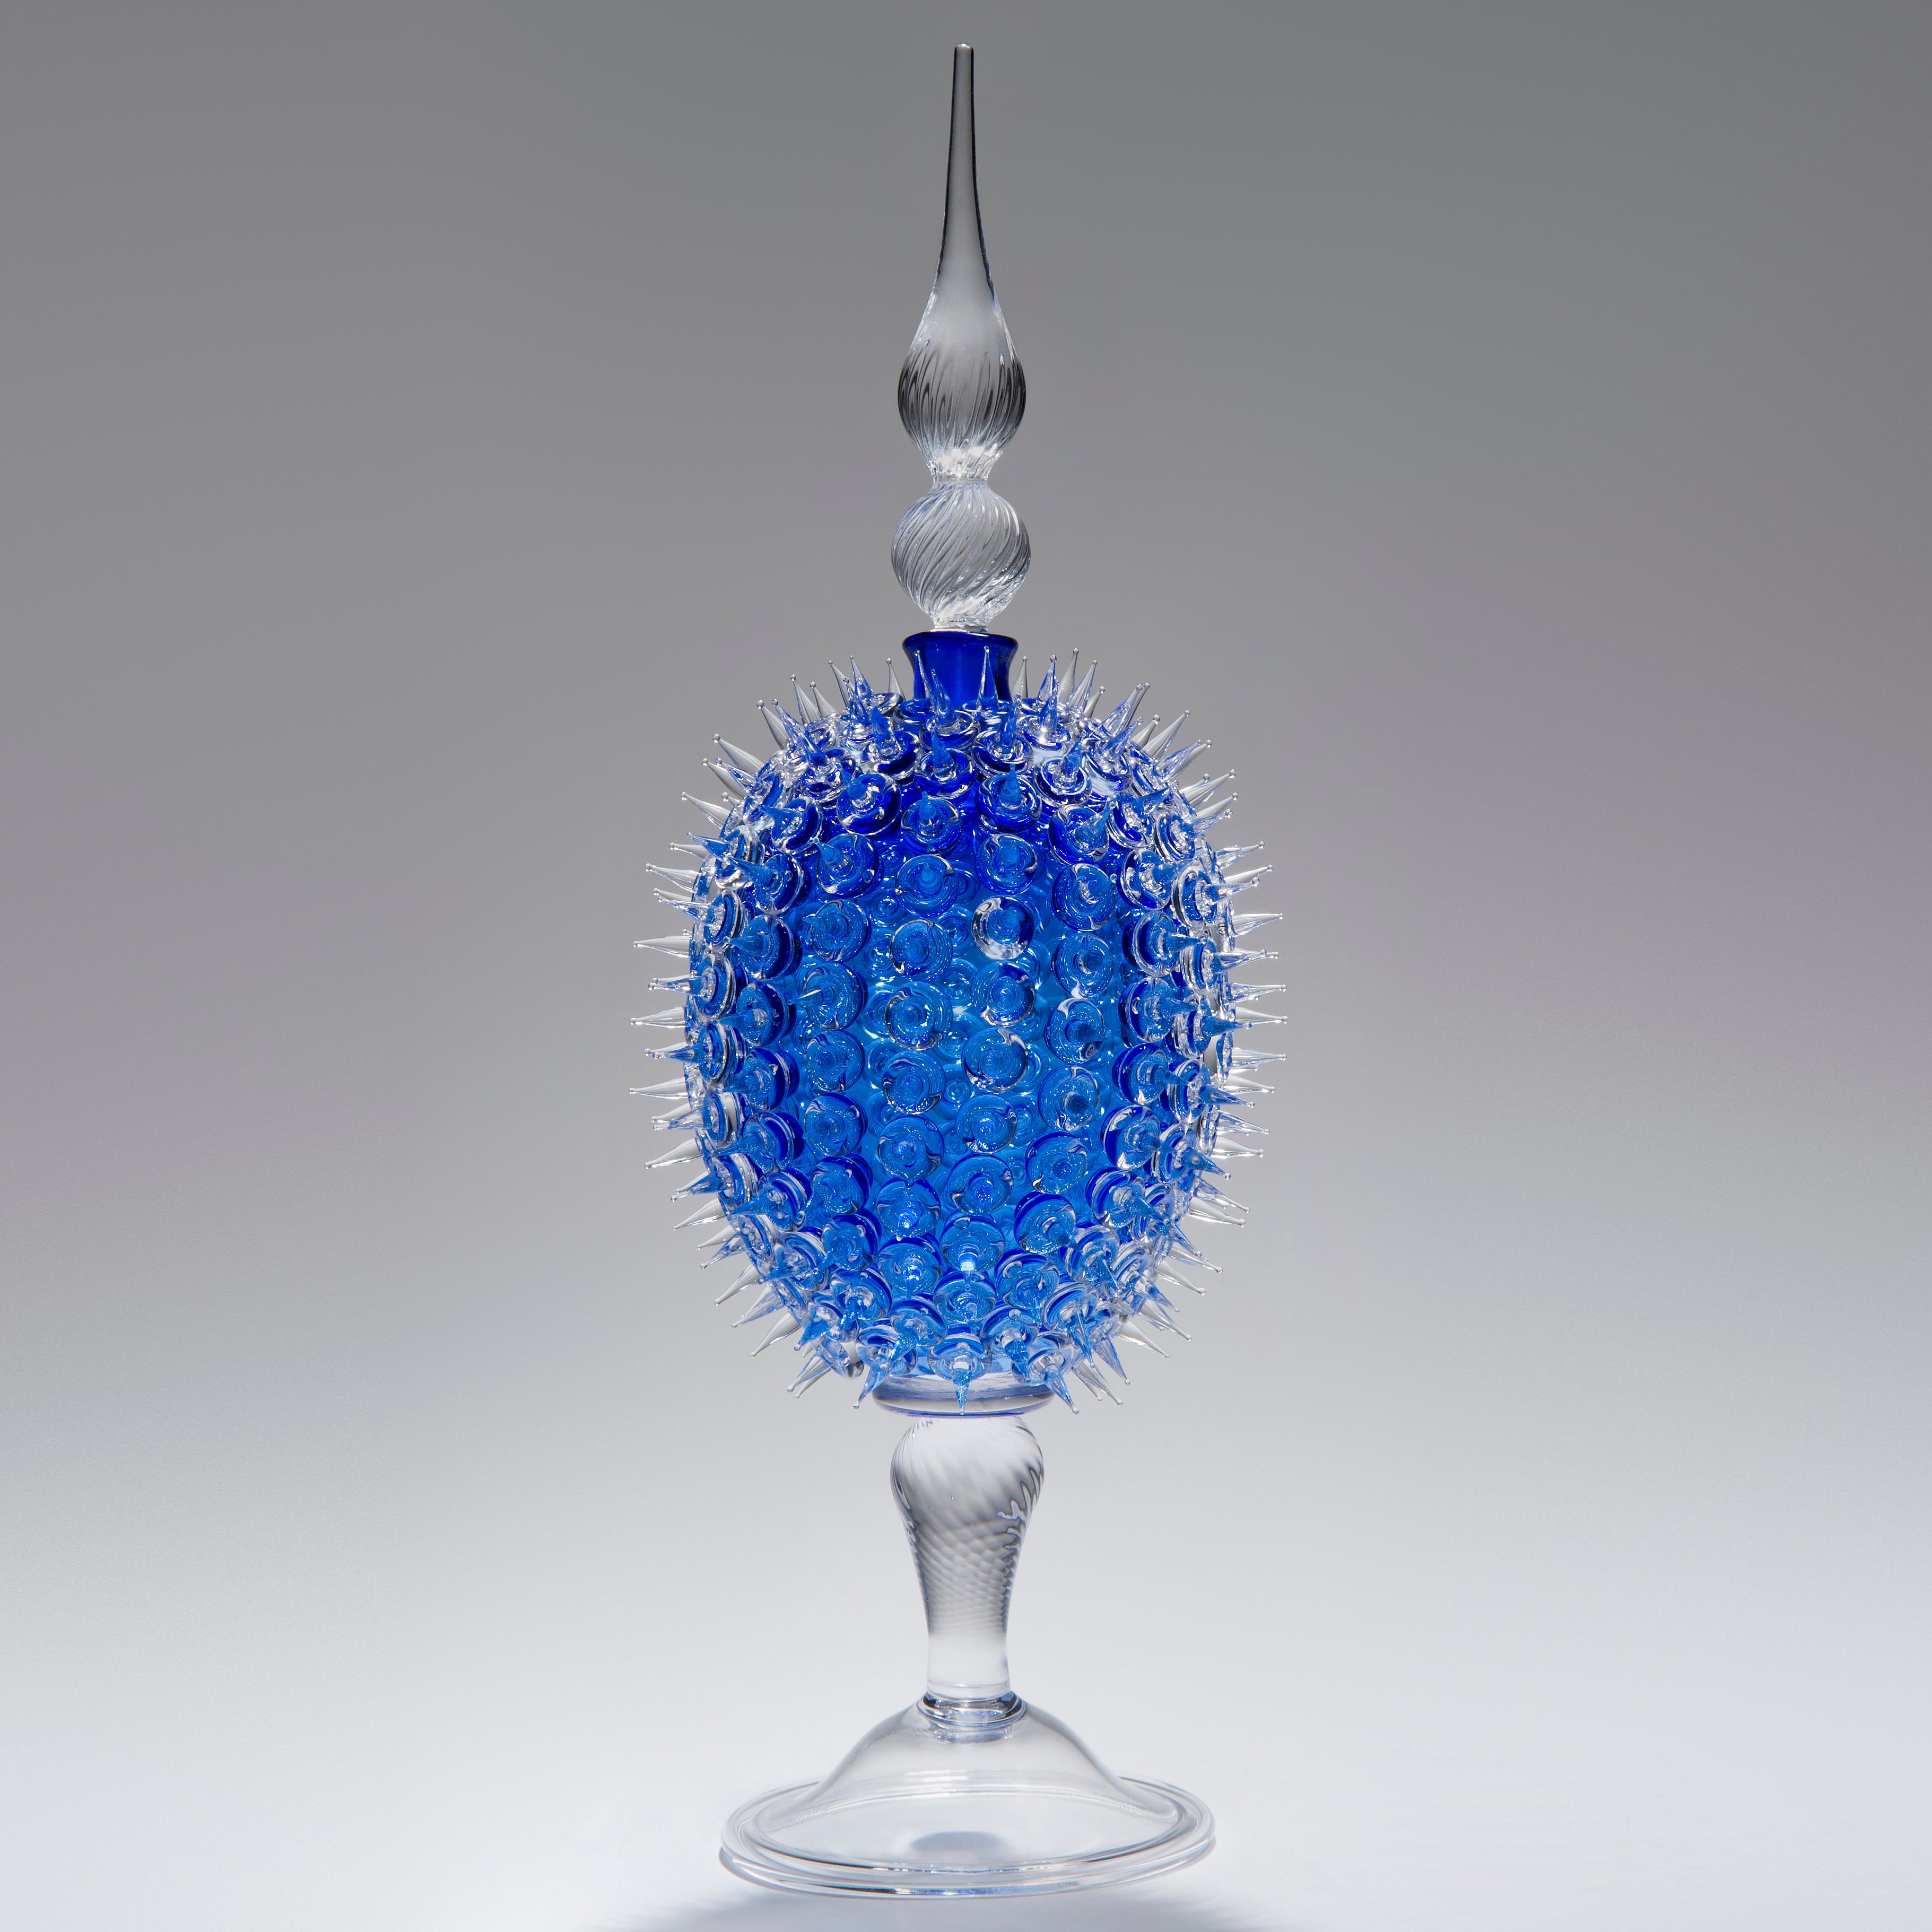 Acanthus Veronese in Blau ist ein einzigartiges Kunstglasgefäß des britischen Glaskünstlers James Lethbridge. Geblasenes Glas, dessen äußere Schicht mit geflammtem Dekor und Verzierungen bedeckt ist. Mit abnehmbarem, dekorativem